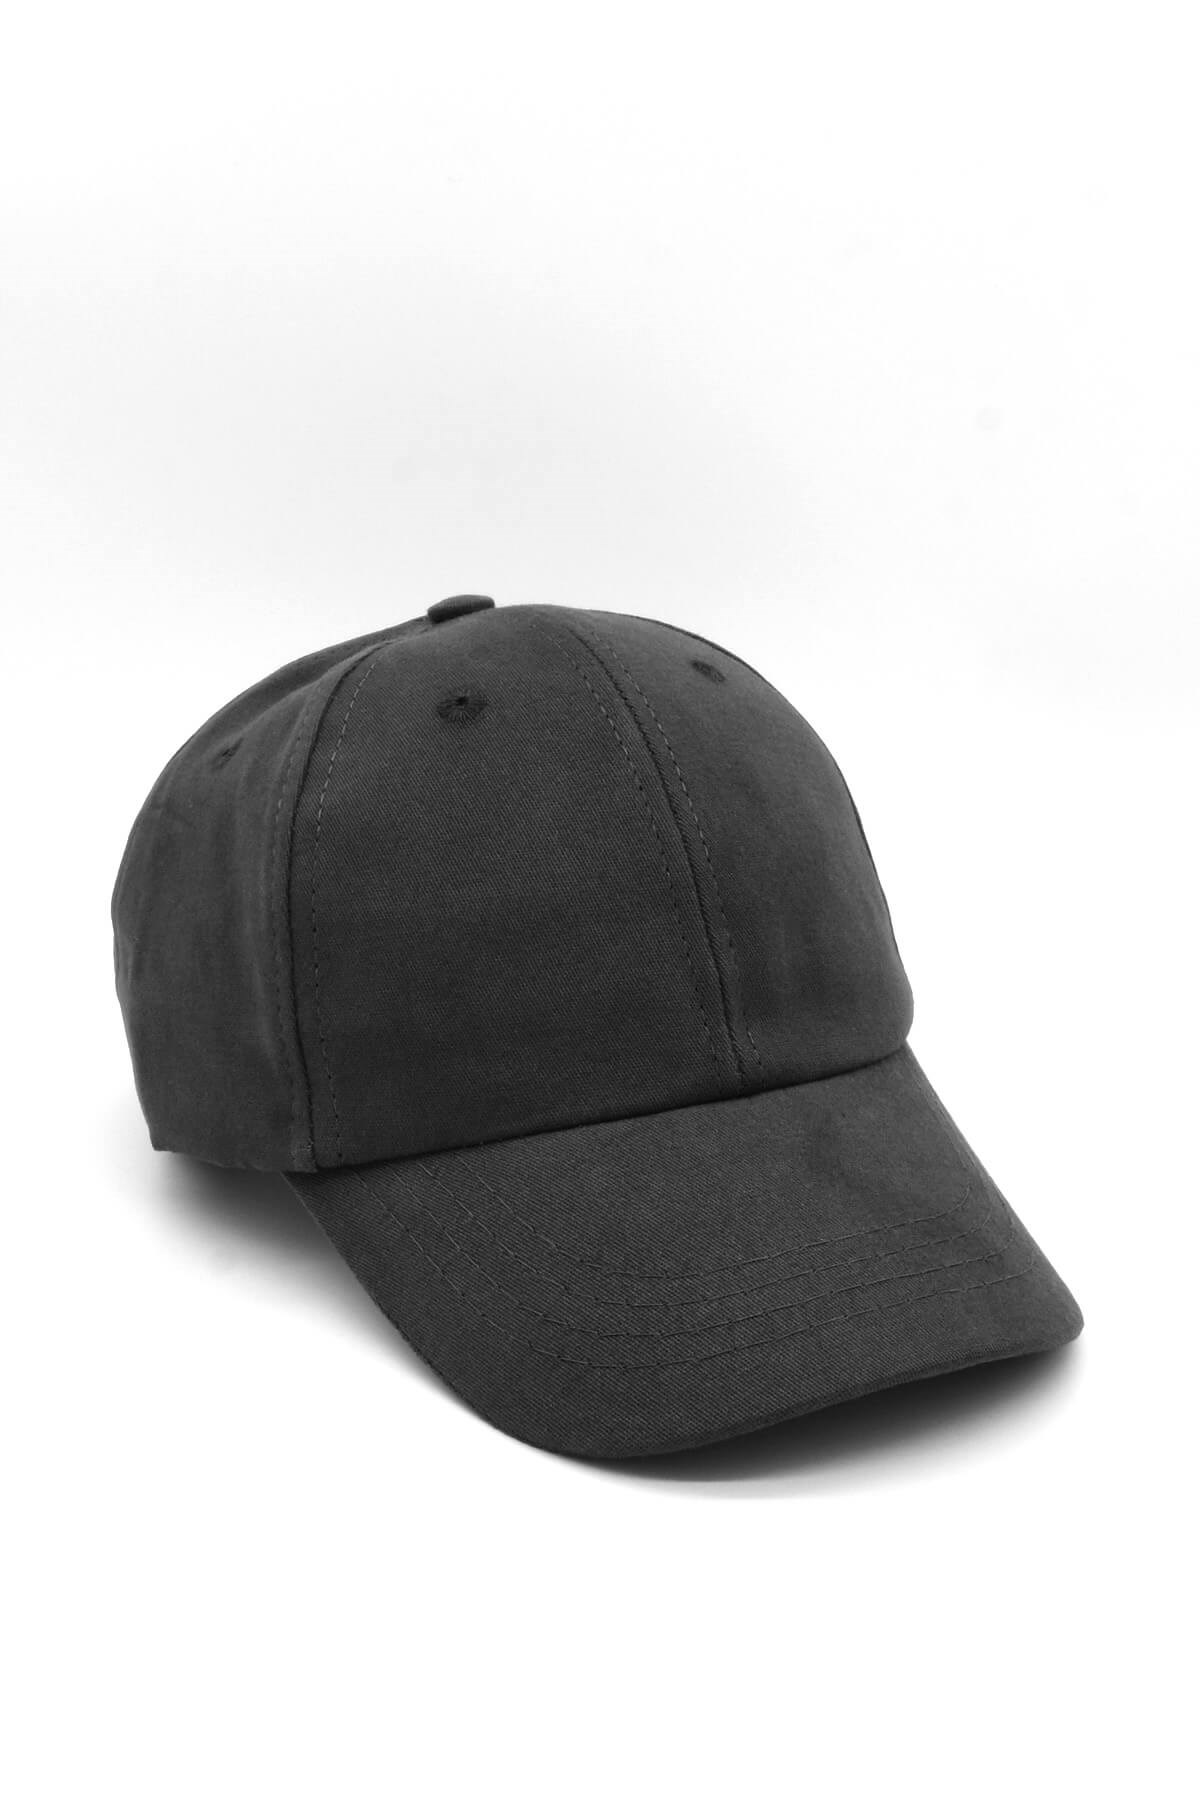 Külah Kadın %100 Pamuk Siyah Cap Beyzbol Şapkası KLH7023